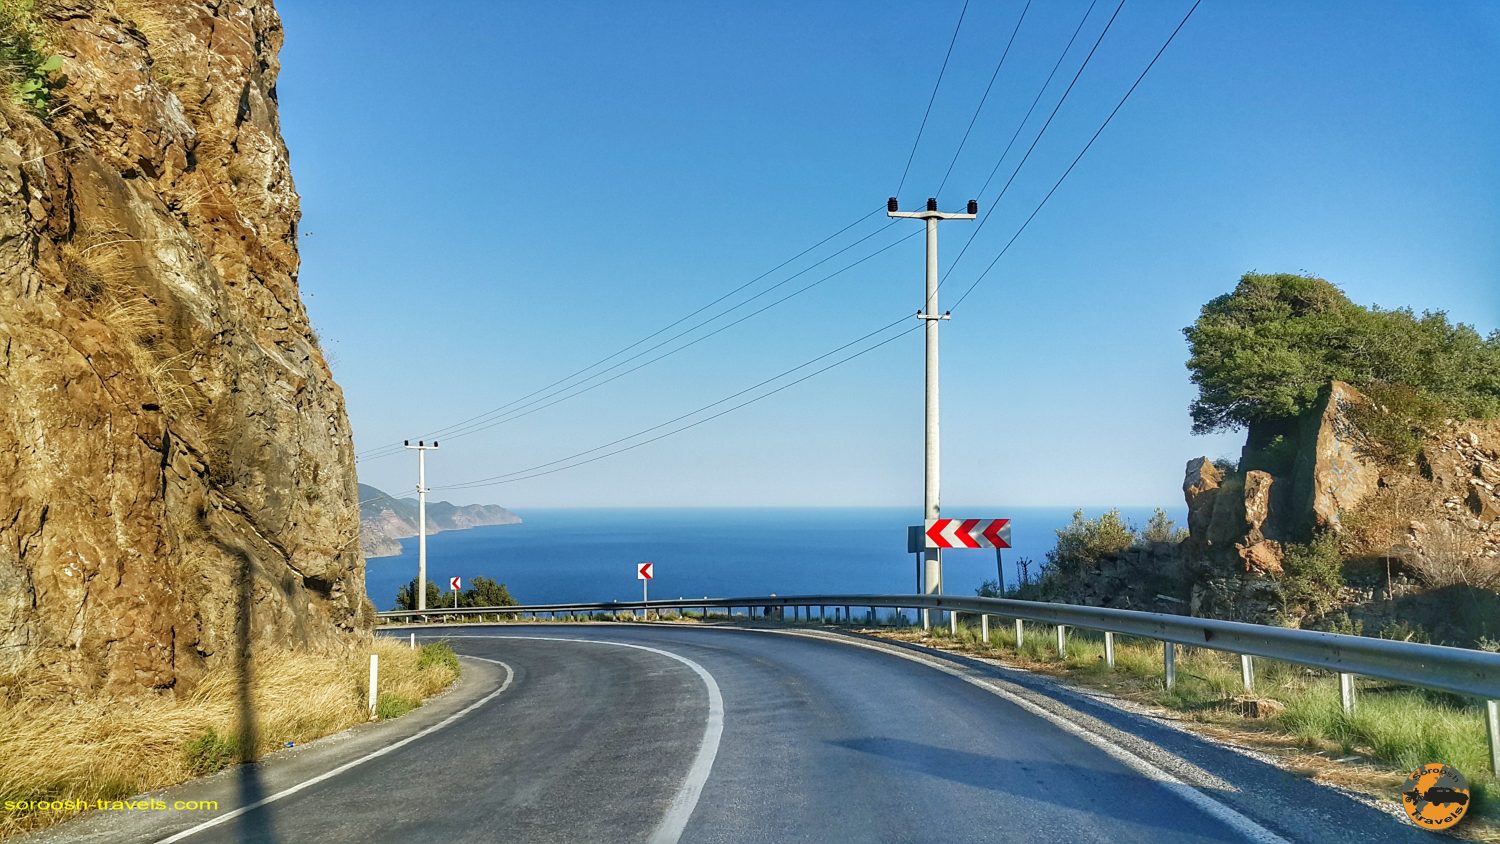 جاده ساحلی مدیترانه در ترکیه - تابستان 1398 2019